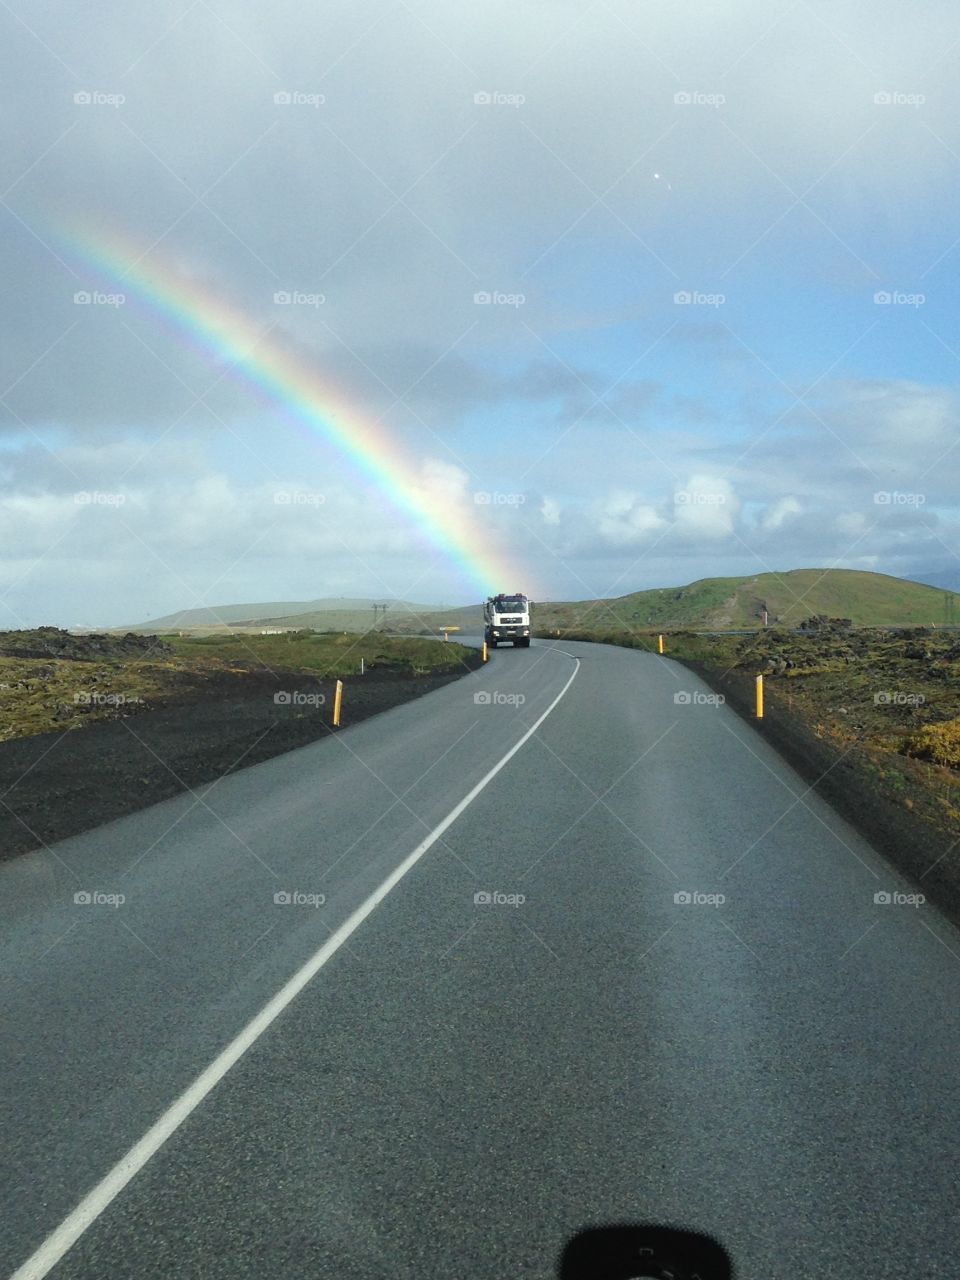 Highway rainbow